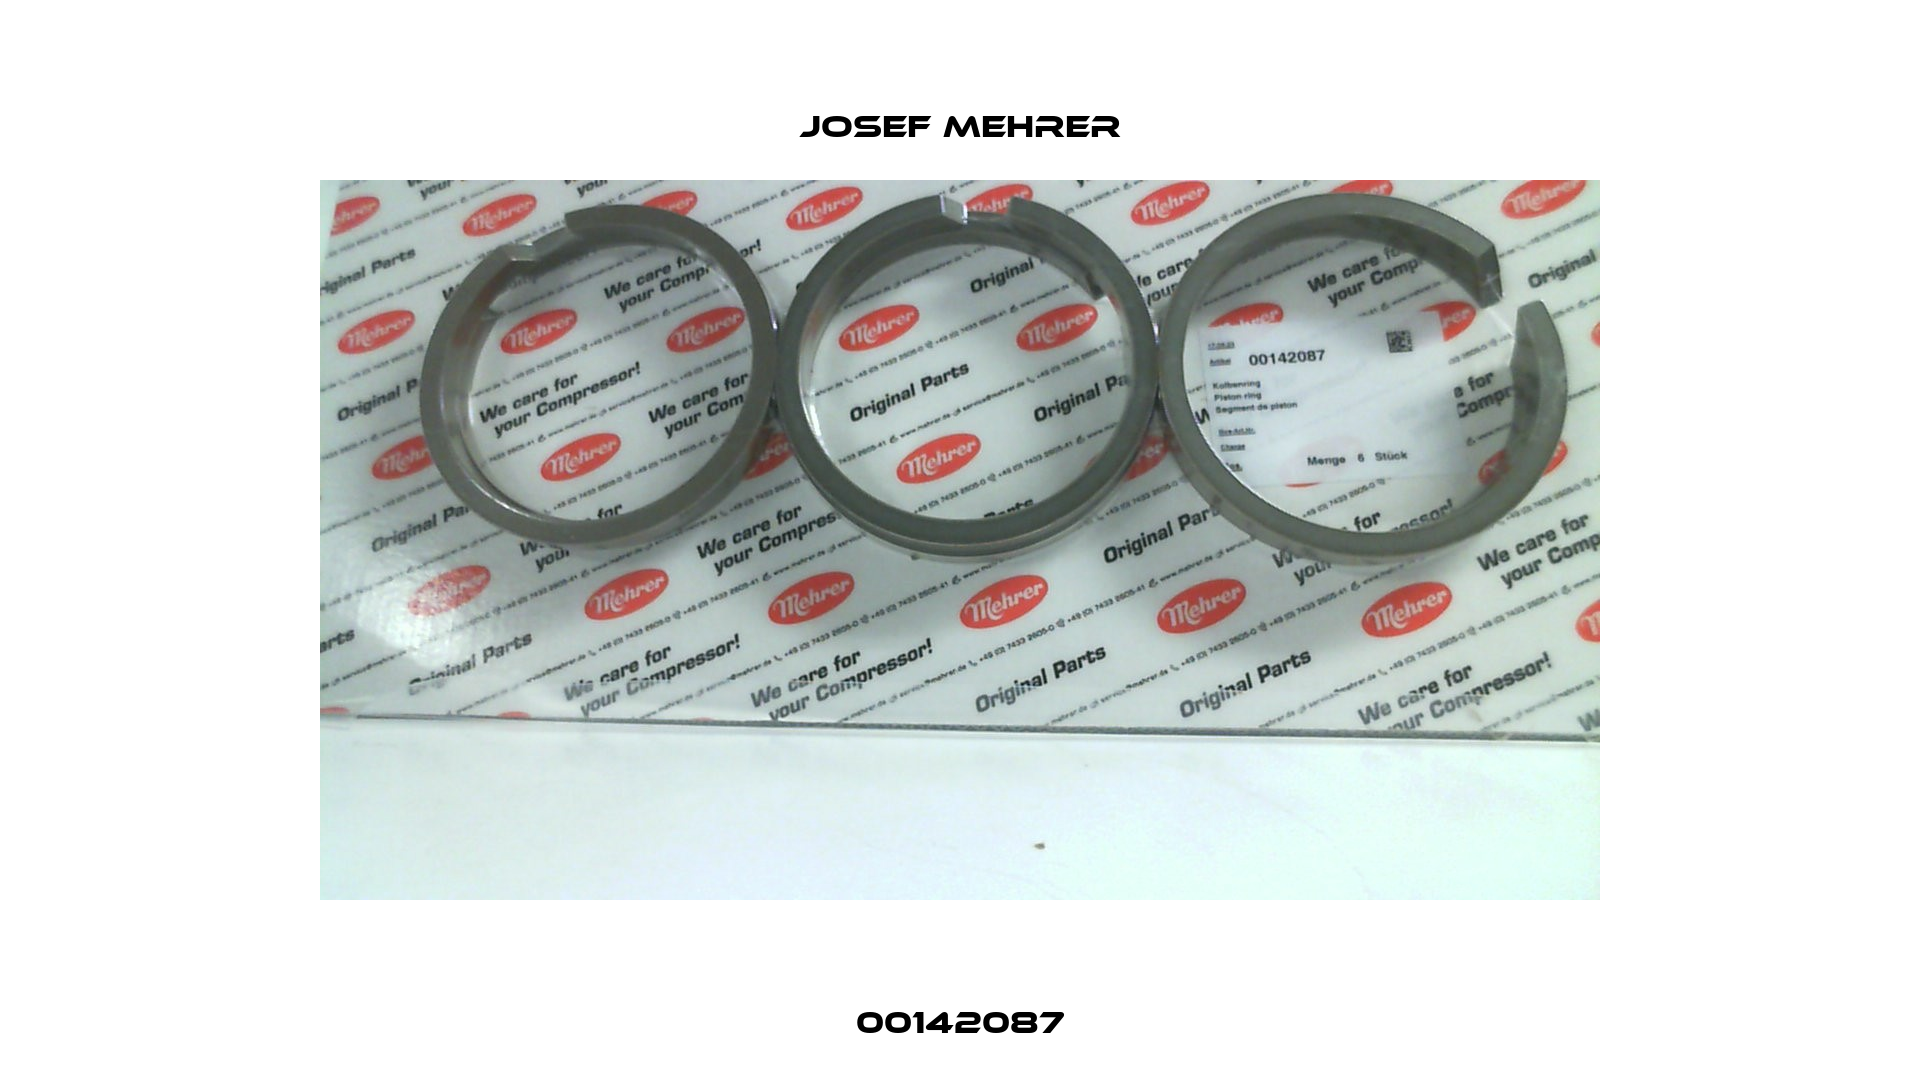 00142087 Josef Mehrer